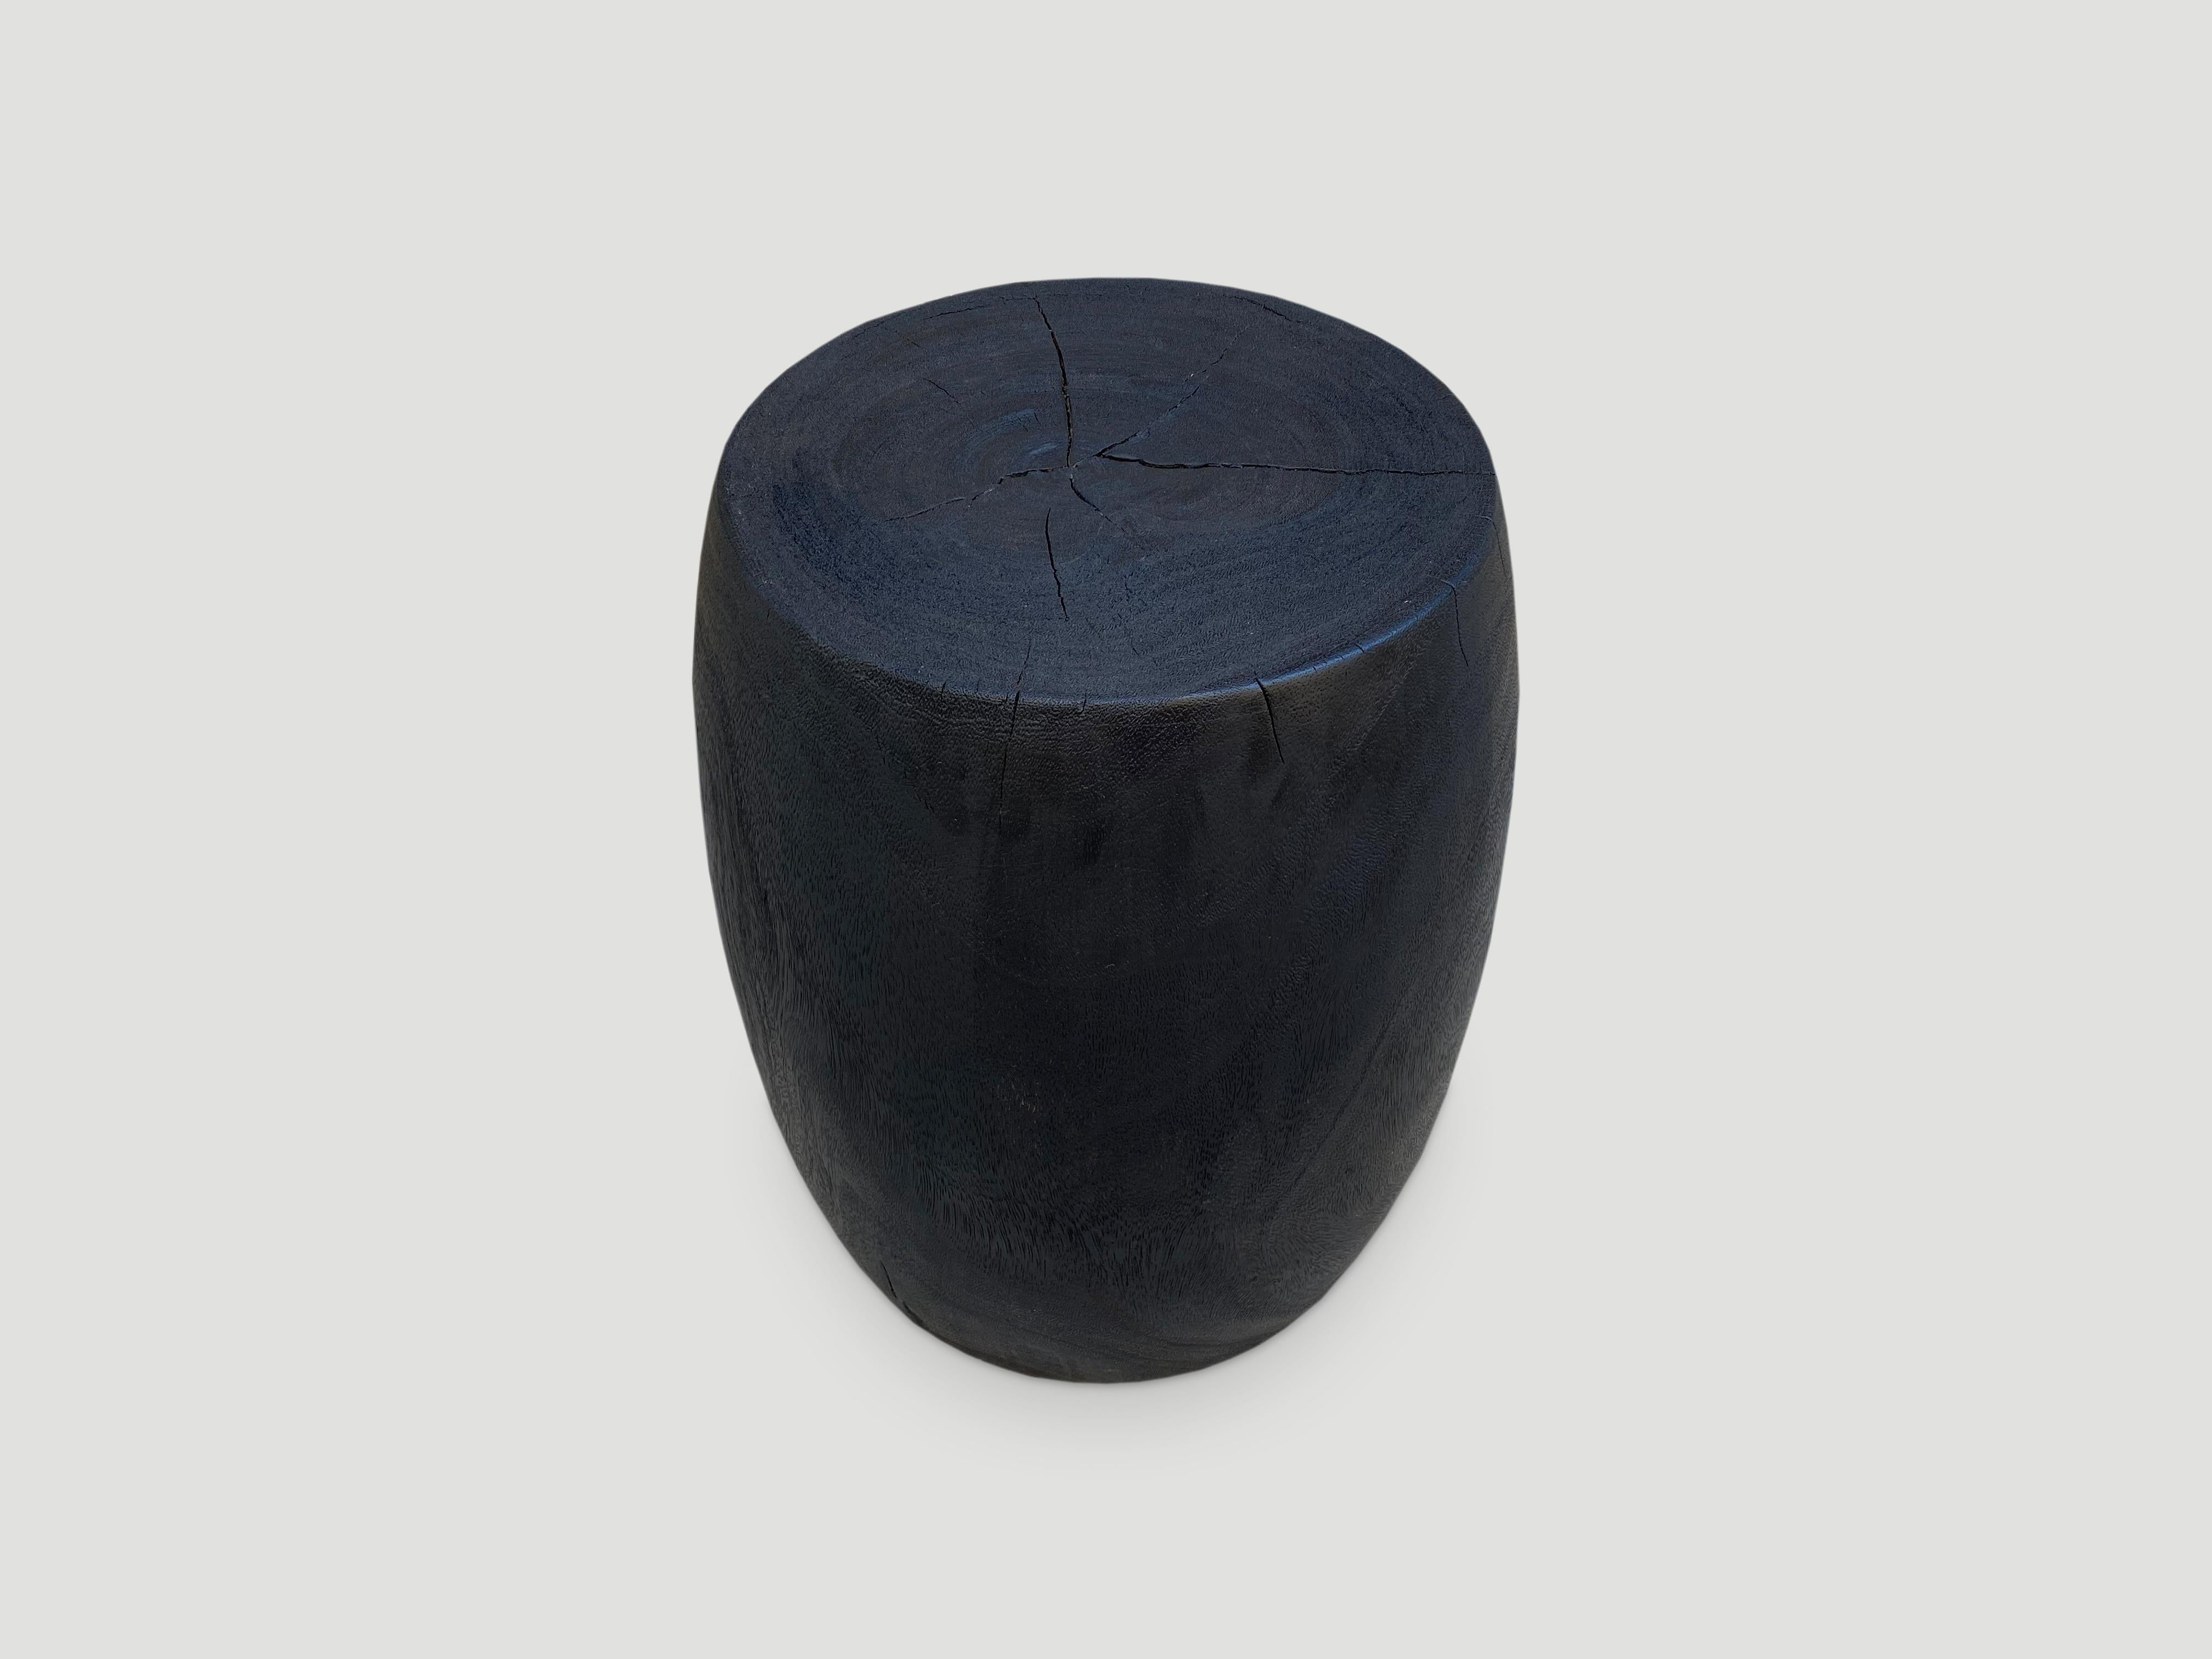 Table d'appoint ou tabouret en forme de tambour en bois de litchi récupéré, sculpté à la main. Brûlé, poncé et scellé exposant le beau grain du bois. 13